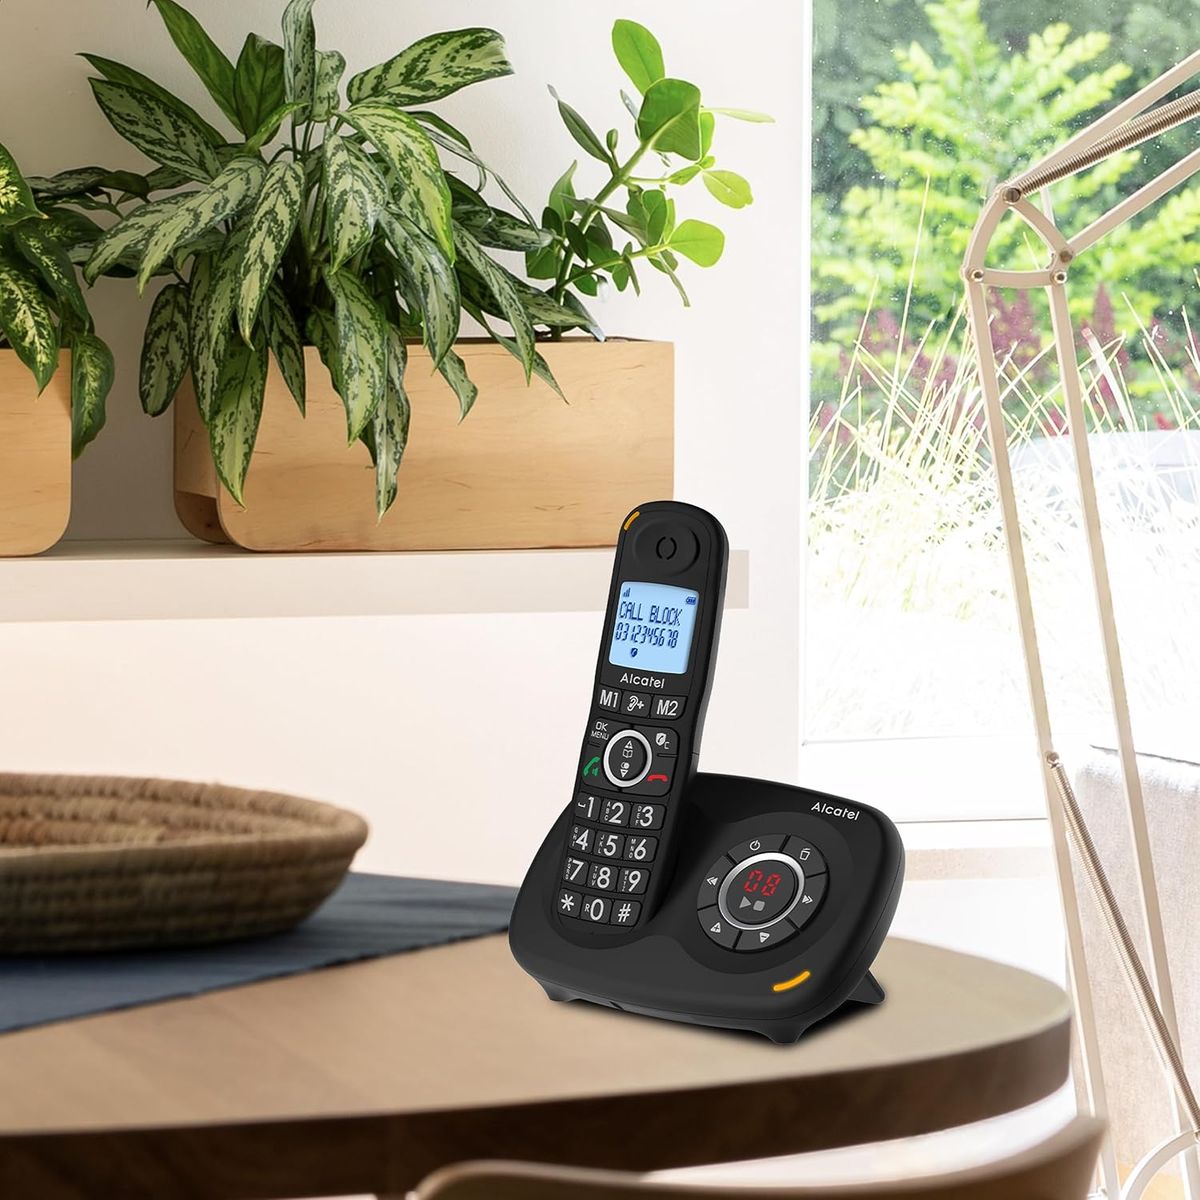 Alcatel XL595 Voice Duo schnurloses Großtastentelefon mit Zwei Mobilteilen und Anrufbeantworter extra großes Festnetztelefon für zuhause mit Anrufschutz